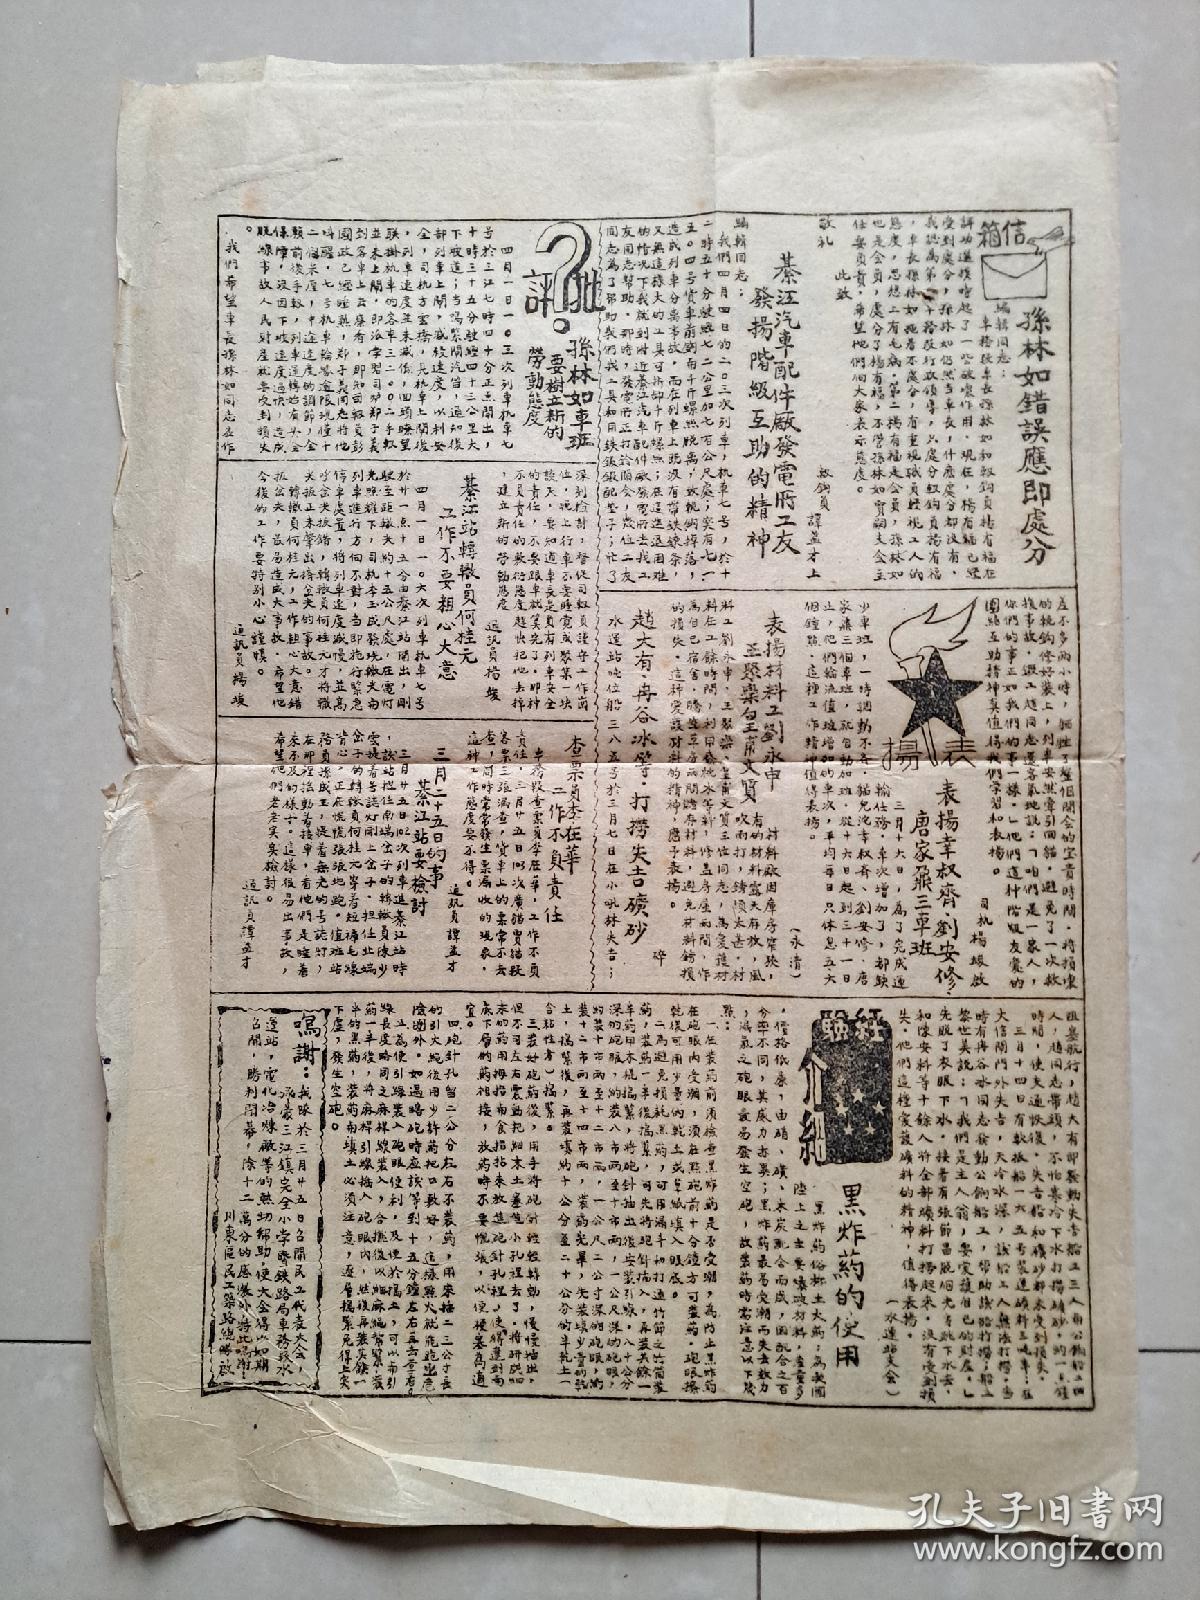 1951年4月 重庆市 綦江铁路局工会筹备委员会《铁路通讯报》第22期。（土纸 石印 非 油印）。